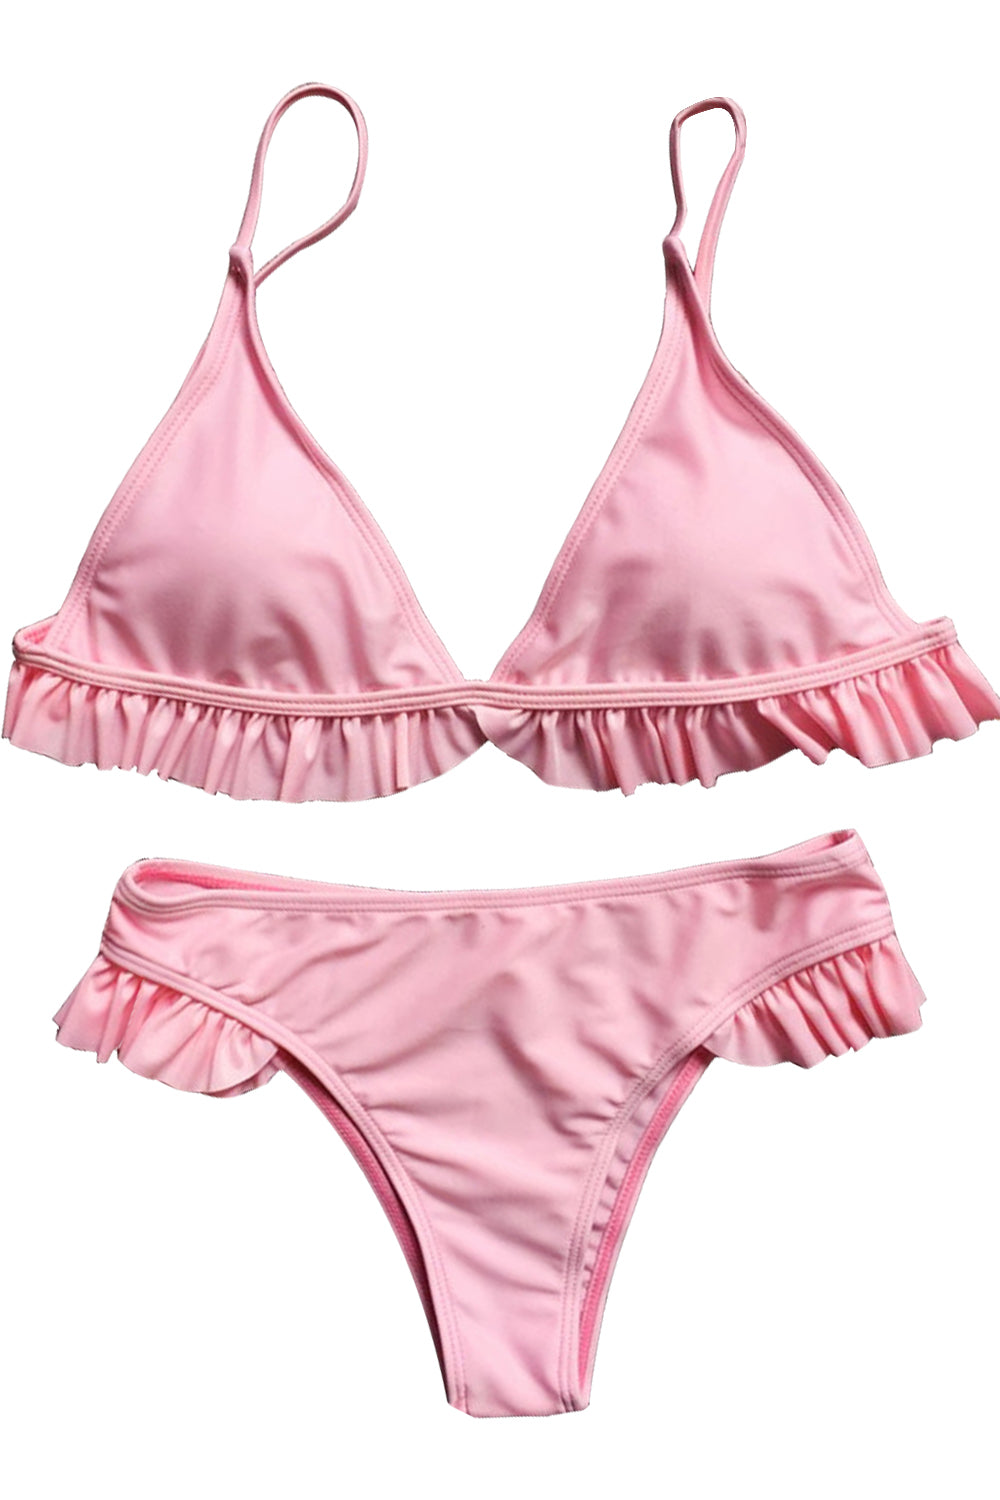 Iyasson Creamy Pink Ruffle Triangle Top Bikini Swimwear